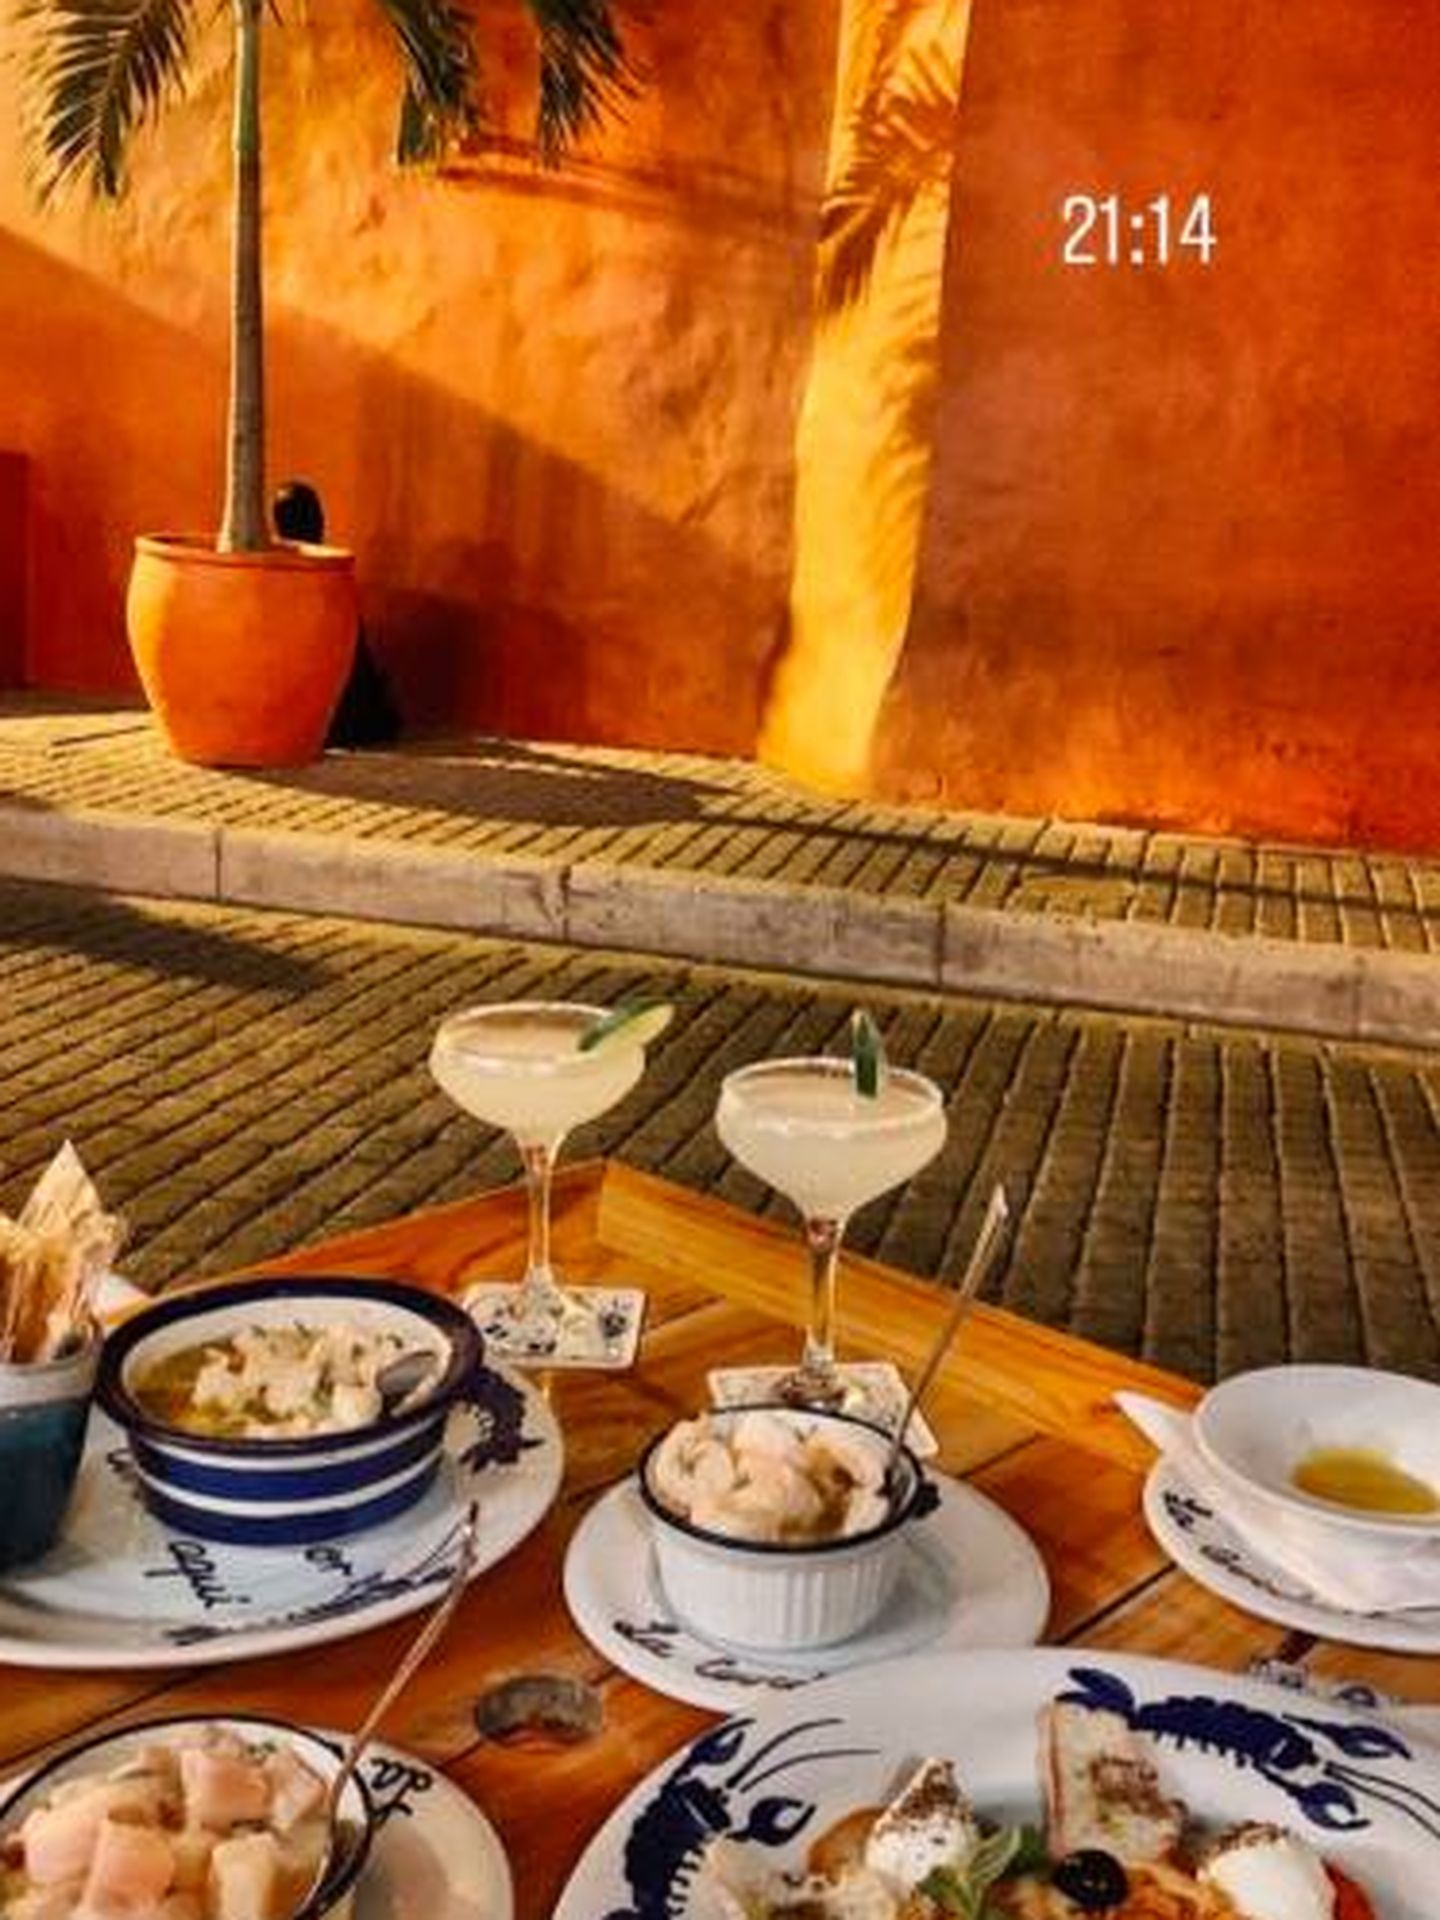 El matrimonio disfruta de deliciosas cenas en Juan del Mar Restaurante, donde han degustado platos como pulpo asado a la brasa sazonado con los secretos del chef montado sobre un hummus de aguacate.